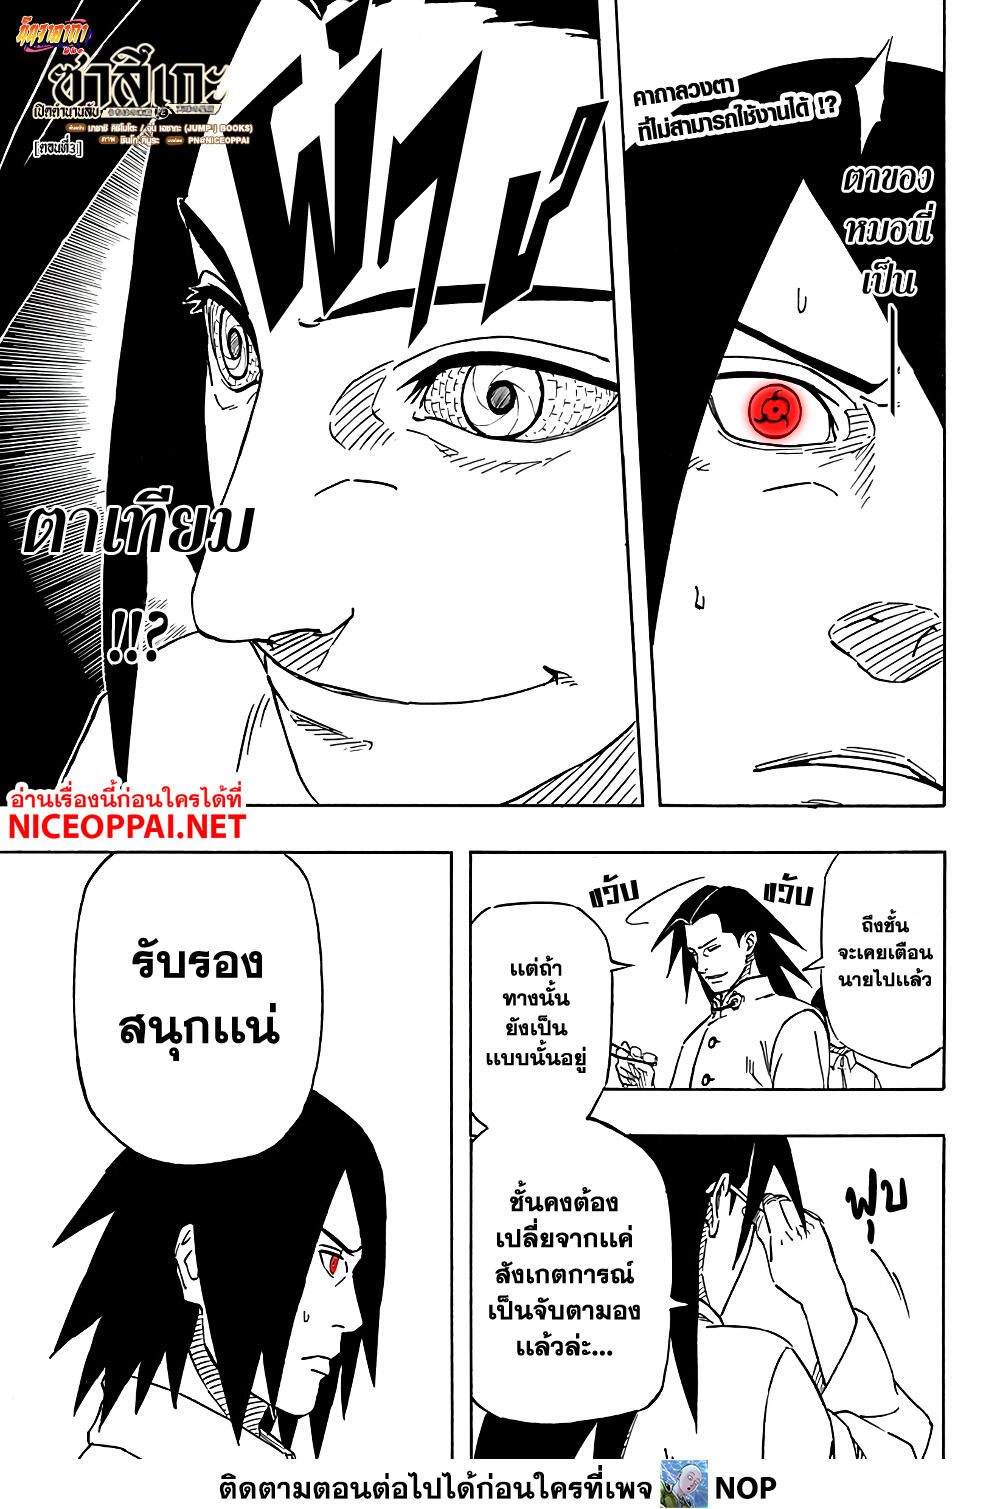 Naruto Sasuke's Story -The Uchiha and the Heavenly Stardust 3-3